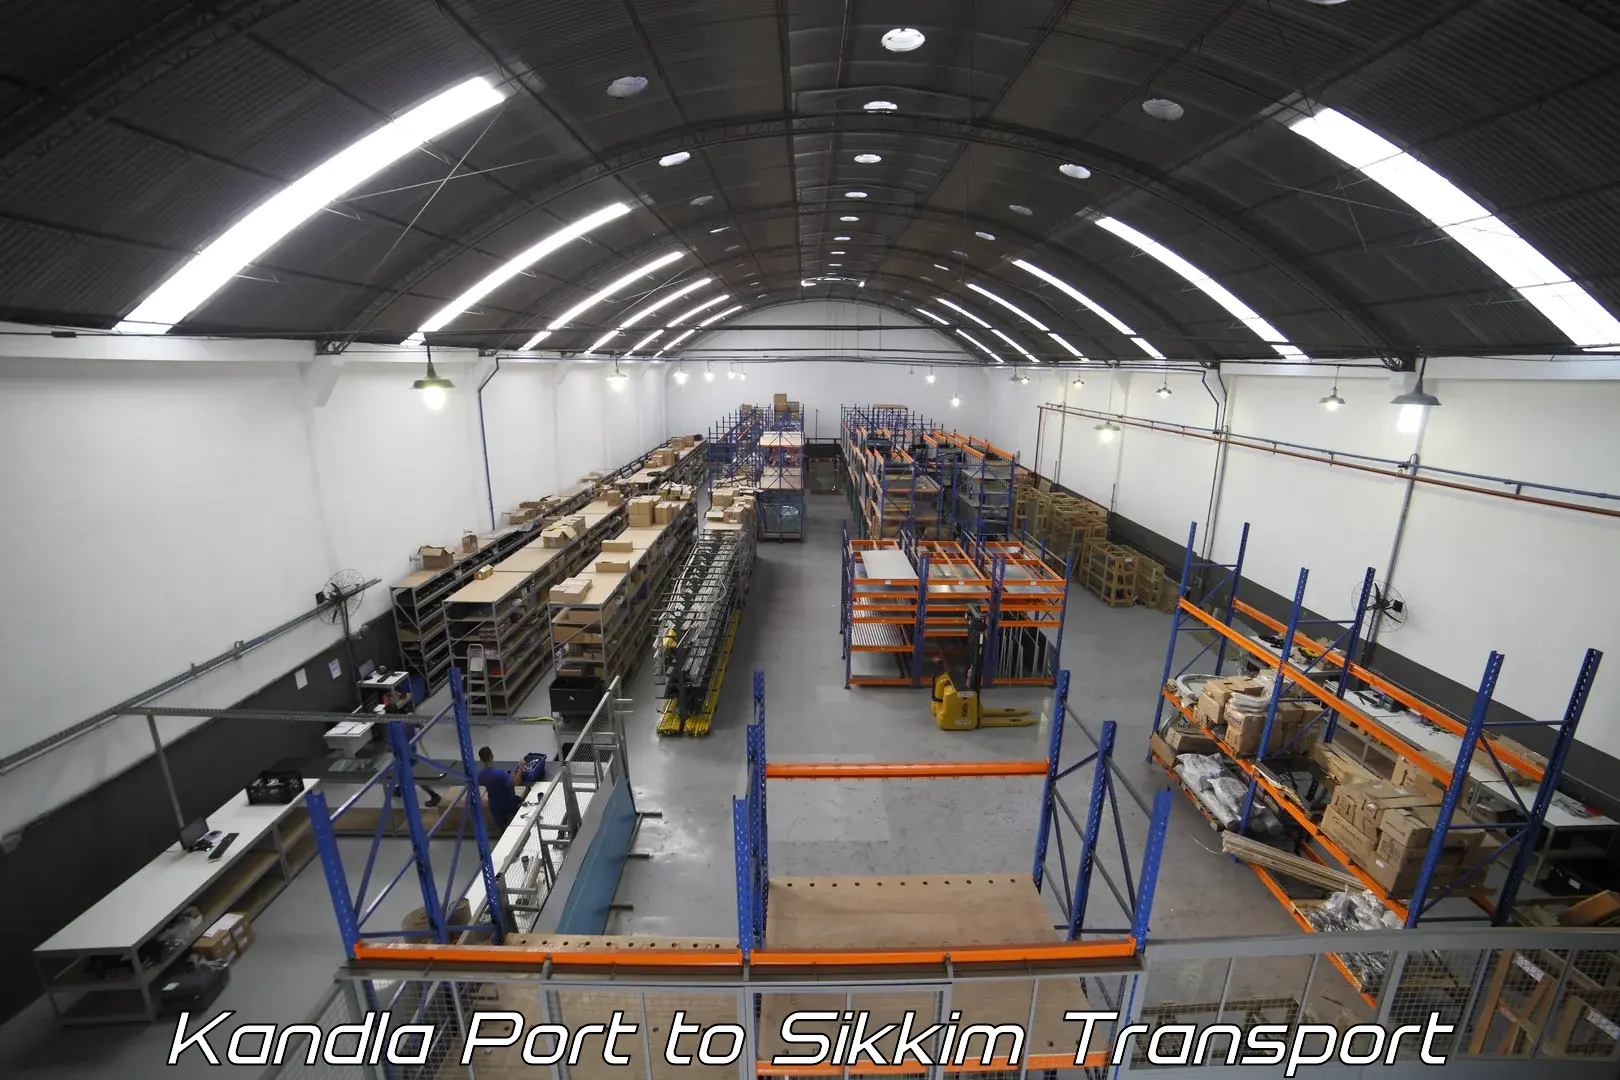 Shipping partner Kandla Port to West Sikkim